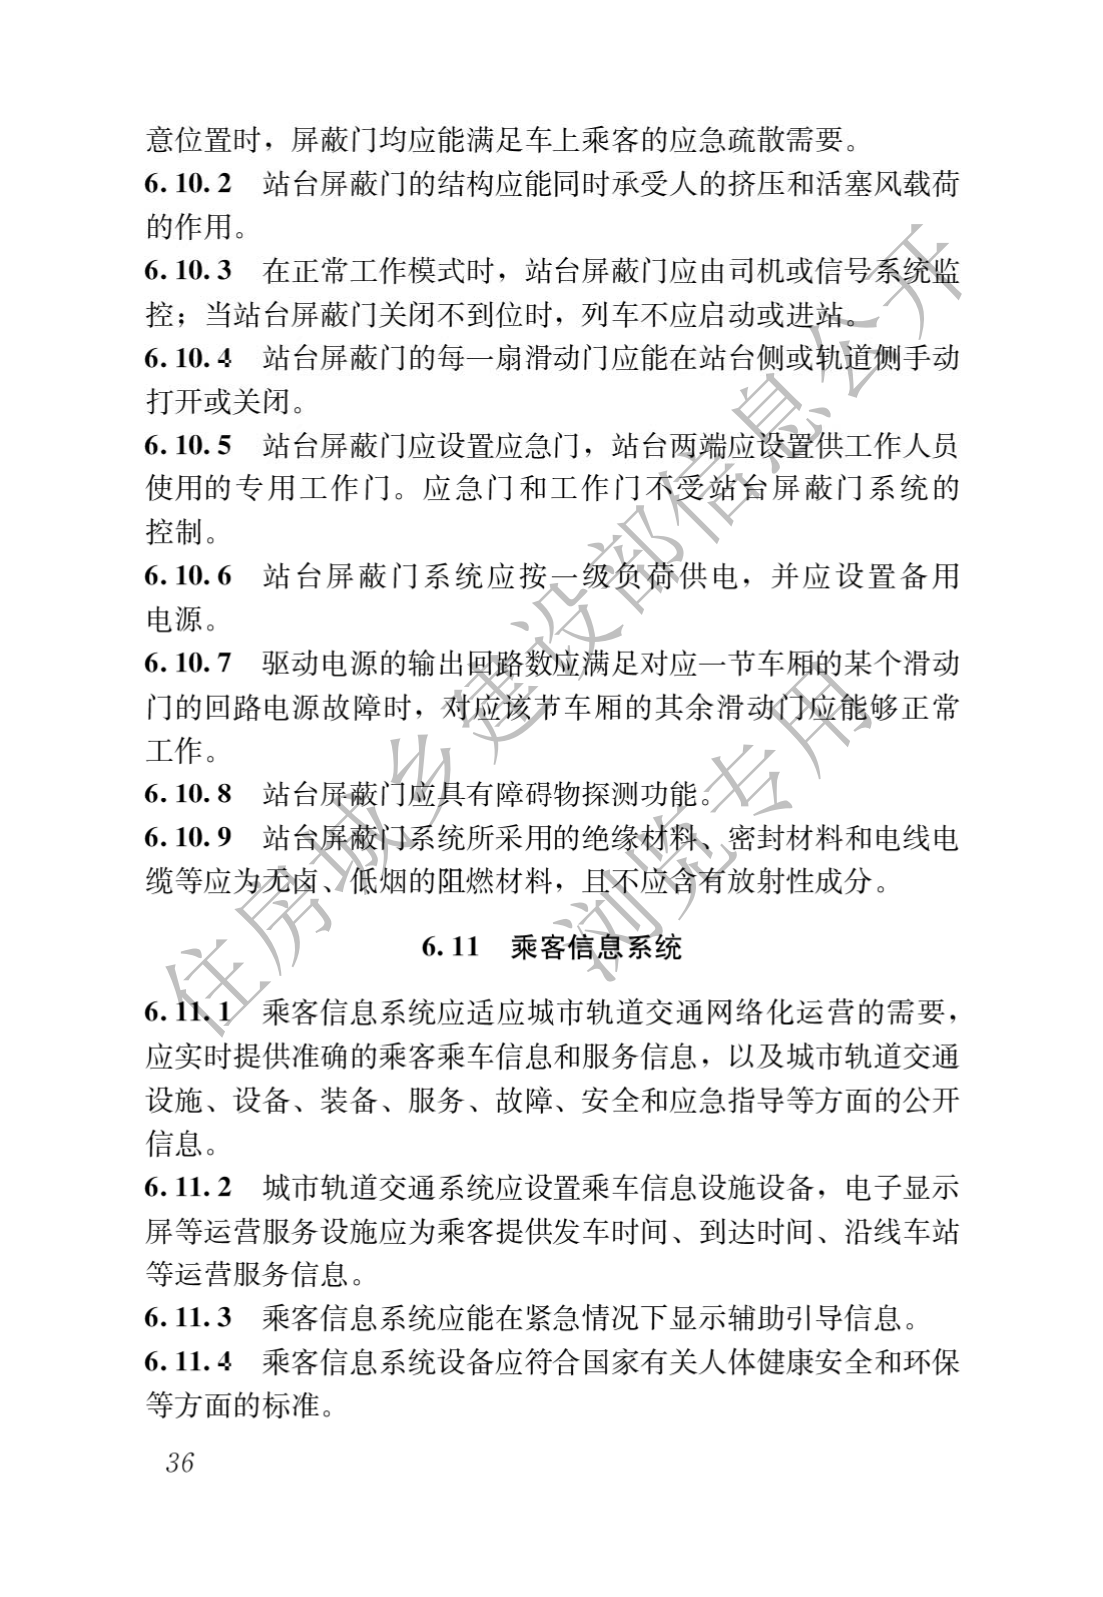 住房和城鄉建設部關于發布國家标準 《城市軌道交通工(gōng)程項目規範》的公告(圖40)